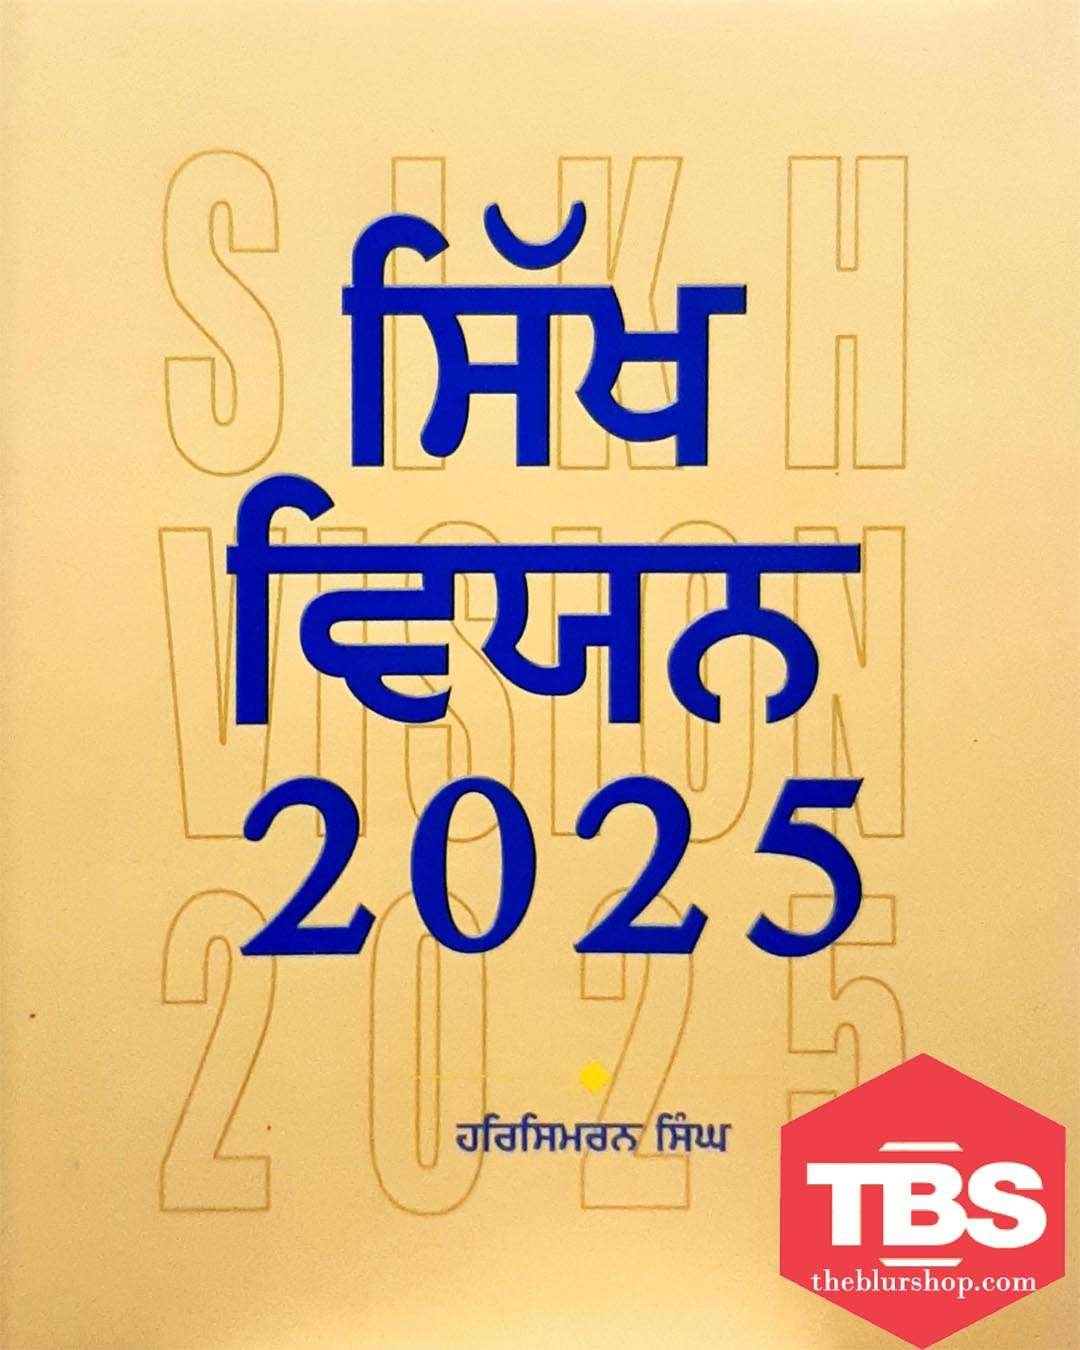 Sikh Vision 2025